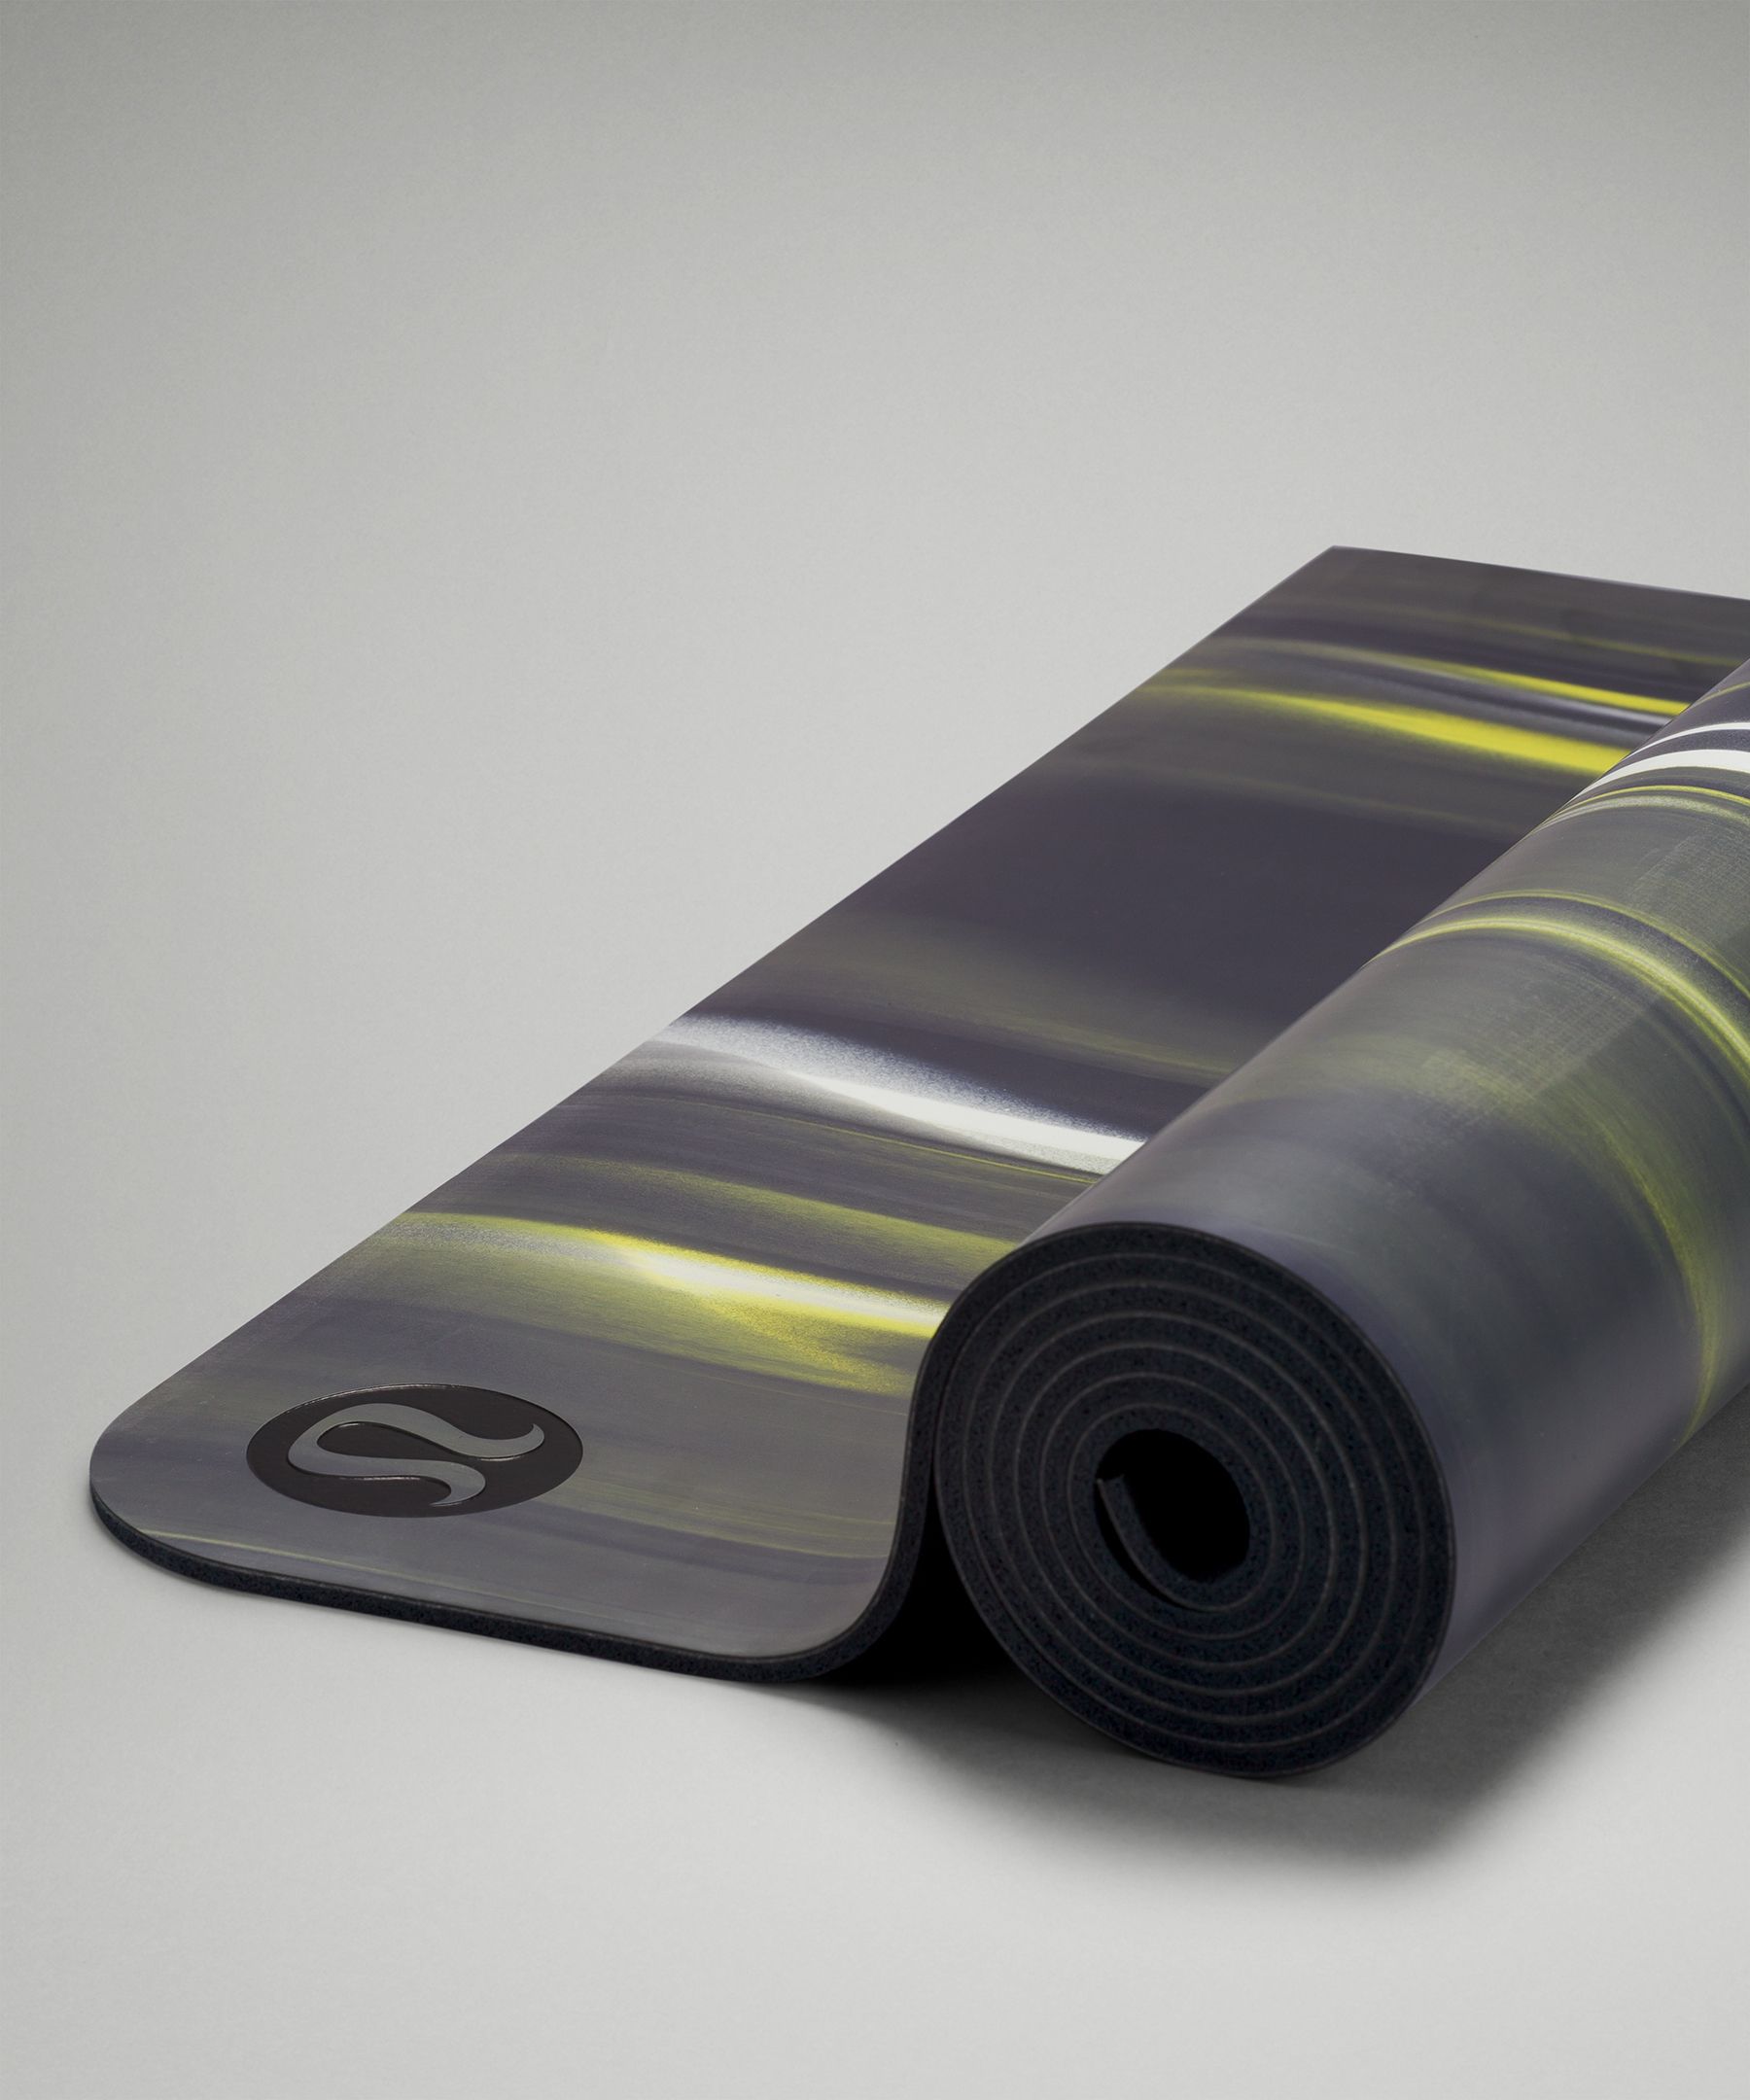 Lululemon Yoga Mat - Arise Mat 5mm (Magenta), Sports Equipment, Exercise &  Fitness, Exercise Mats on Carousell